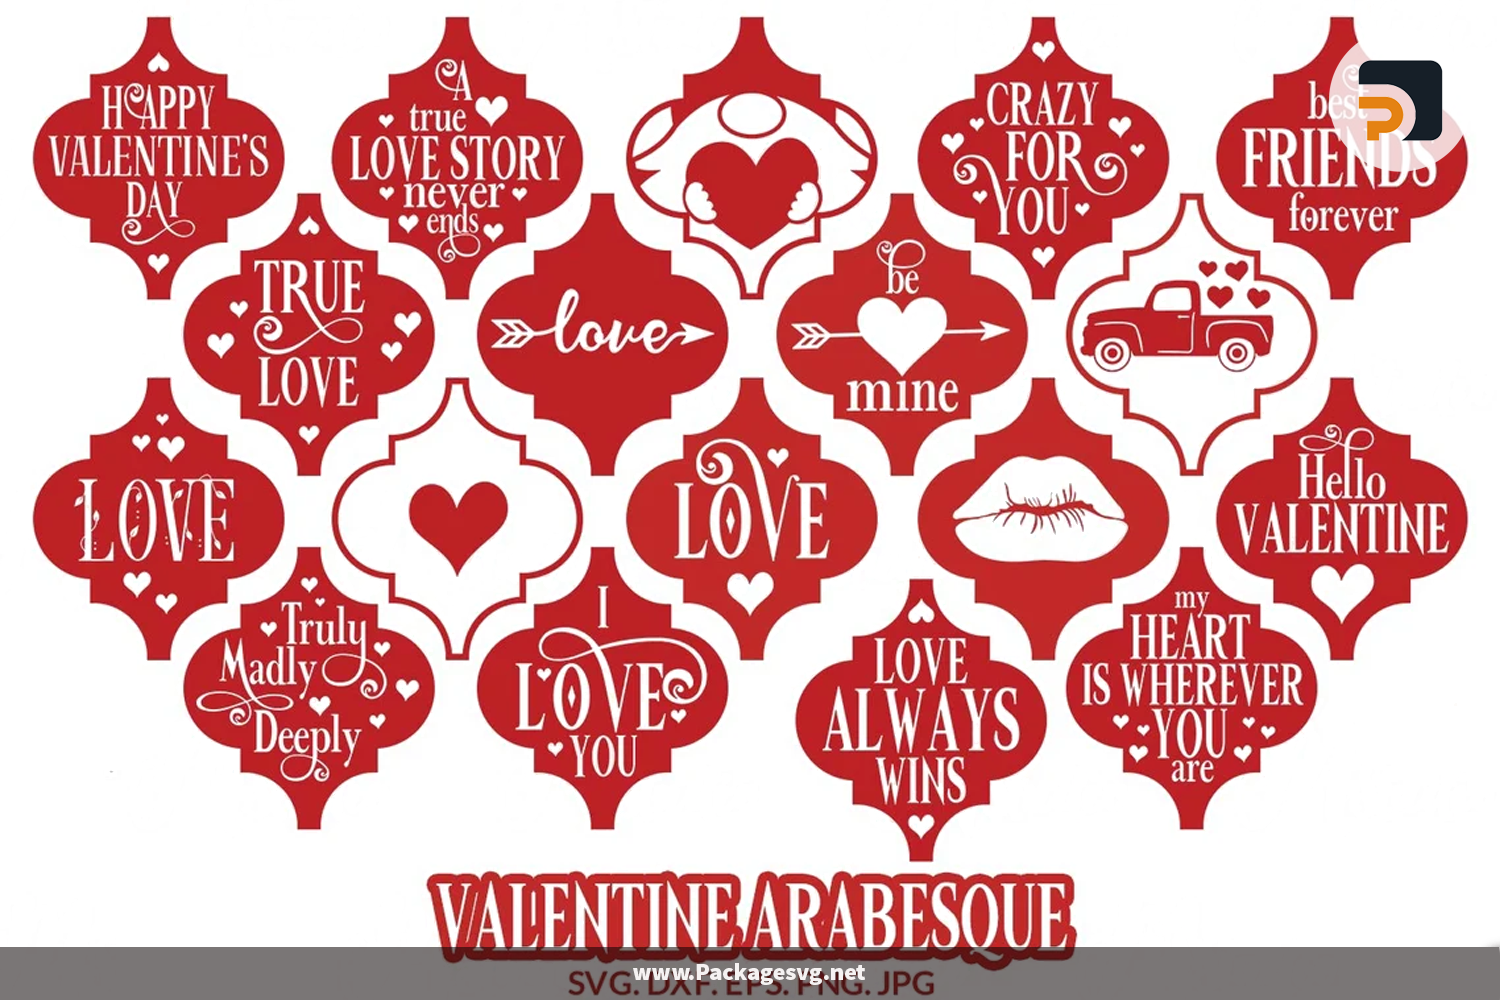 Valentine Arabesque SVG Bundle